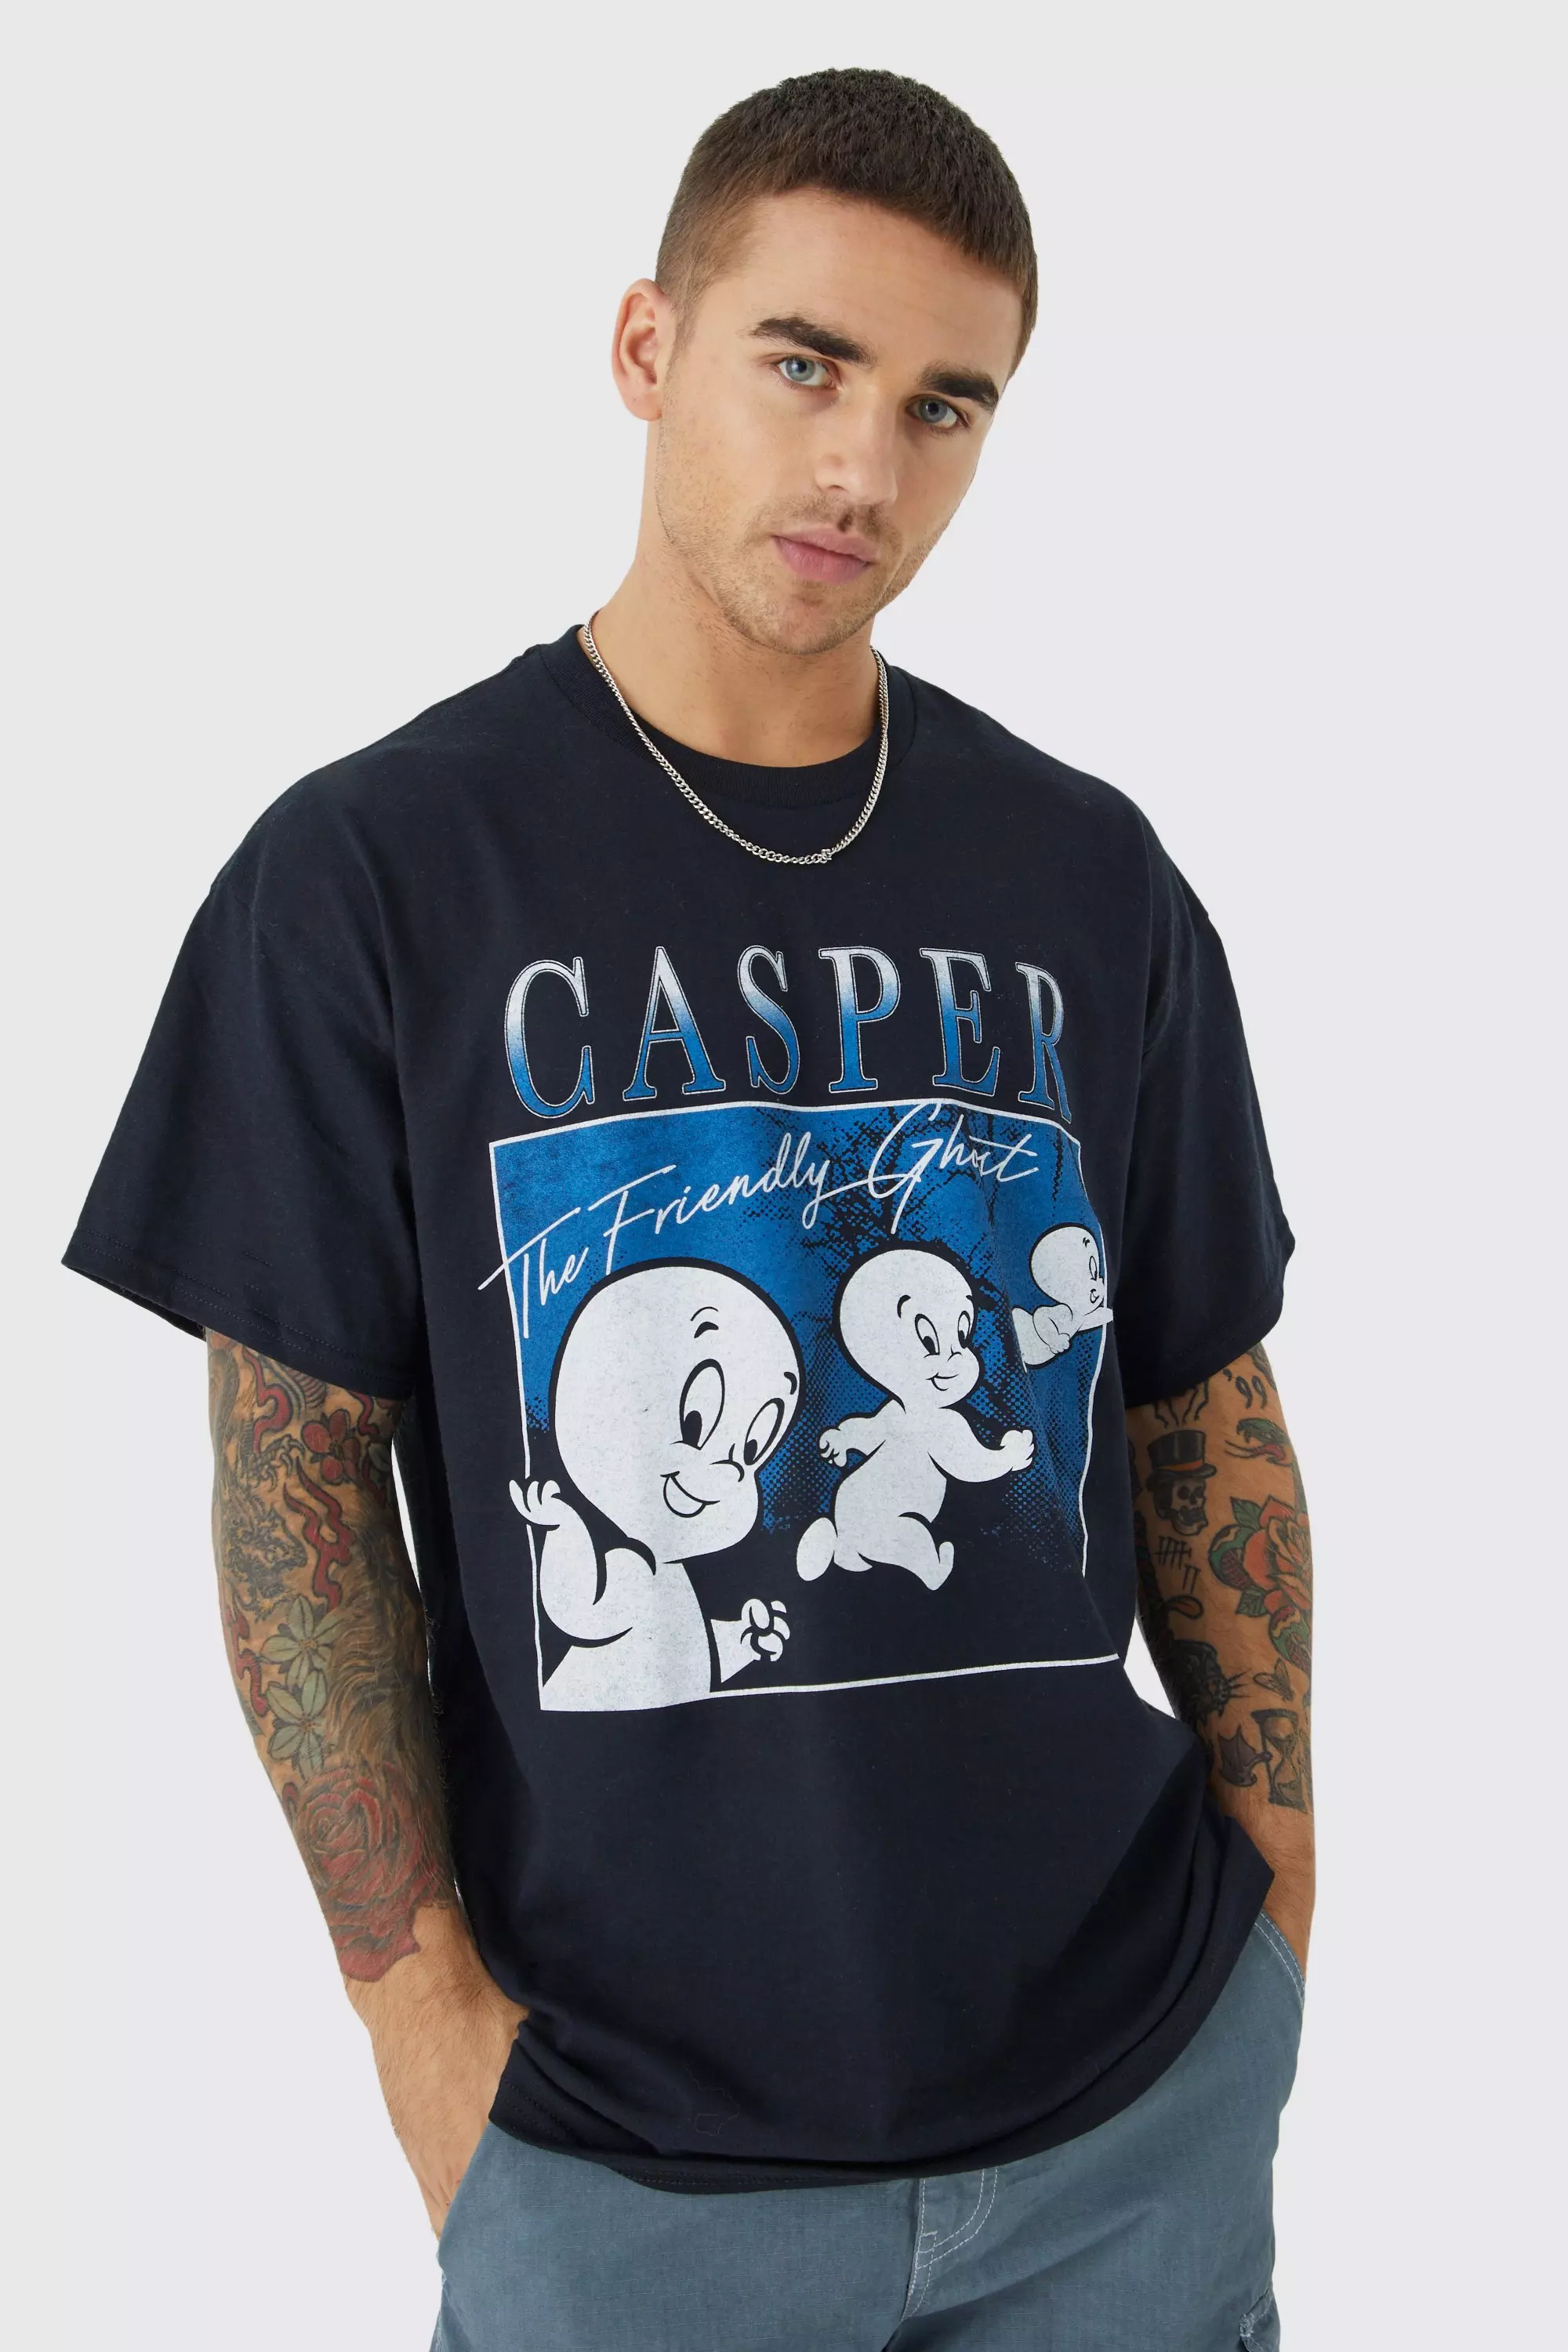 Casper T Shirt 